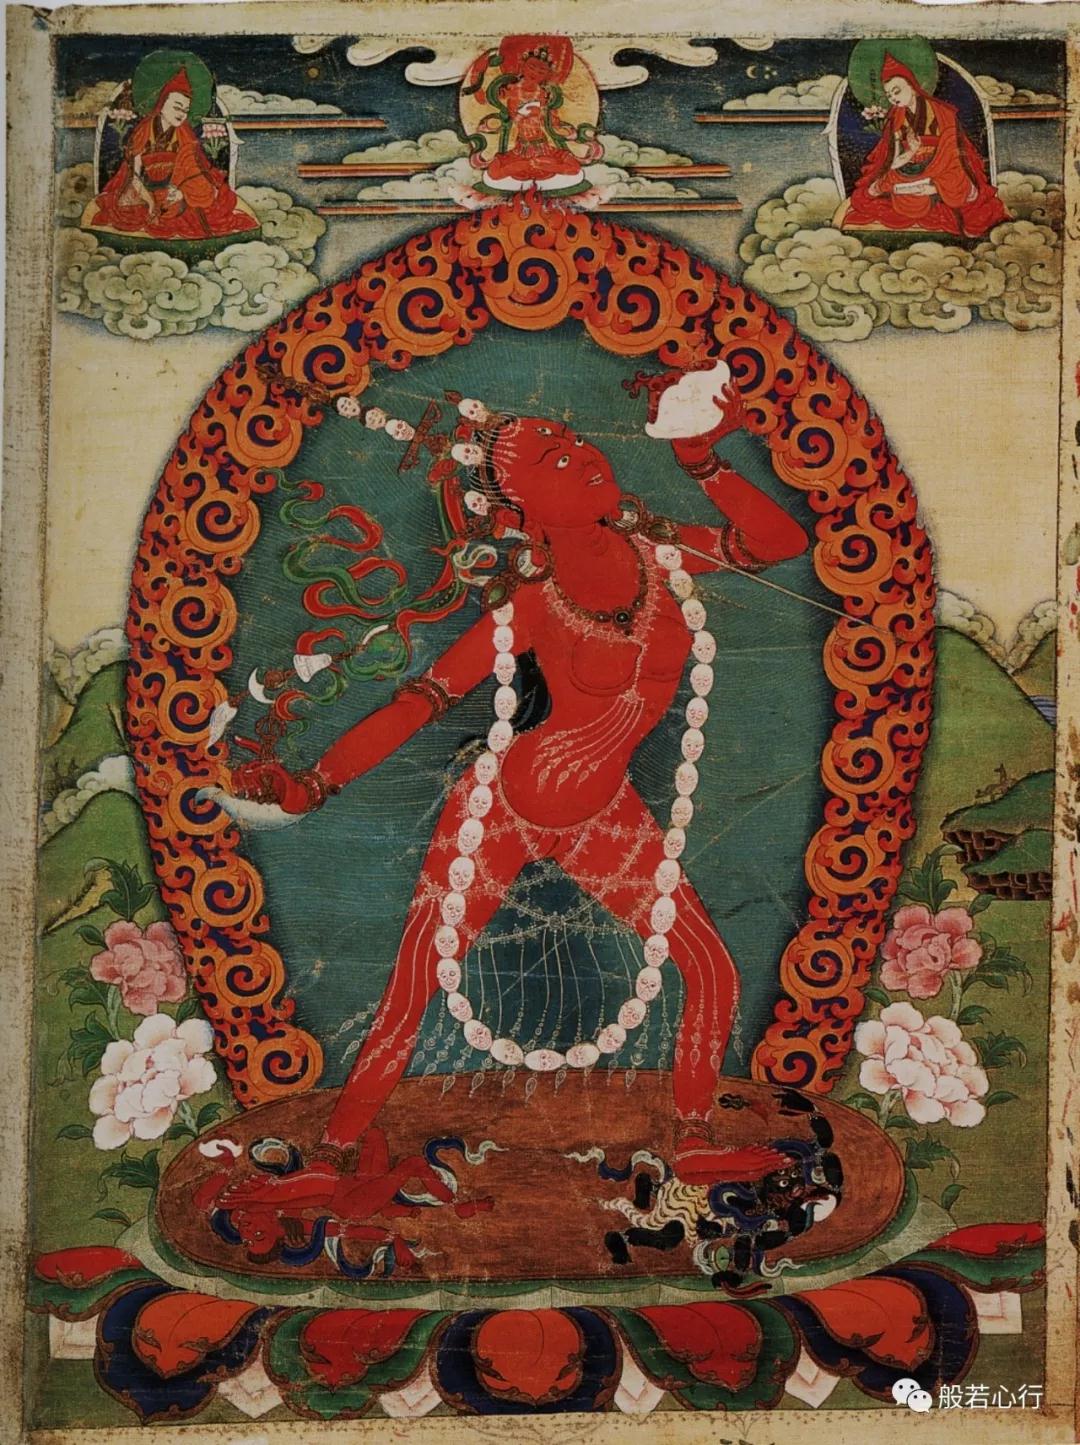 金刚亥母像（那洛空行母，那洛金刚瑜伽母）—《极乐之轮:佛教冥想艺术》